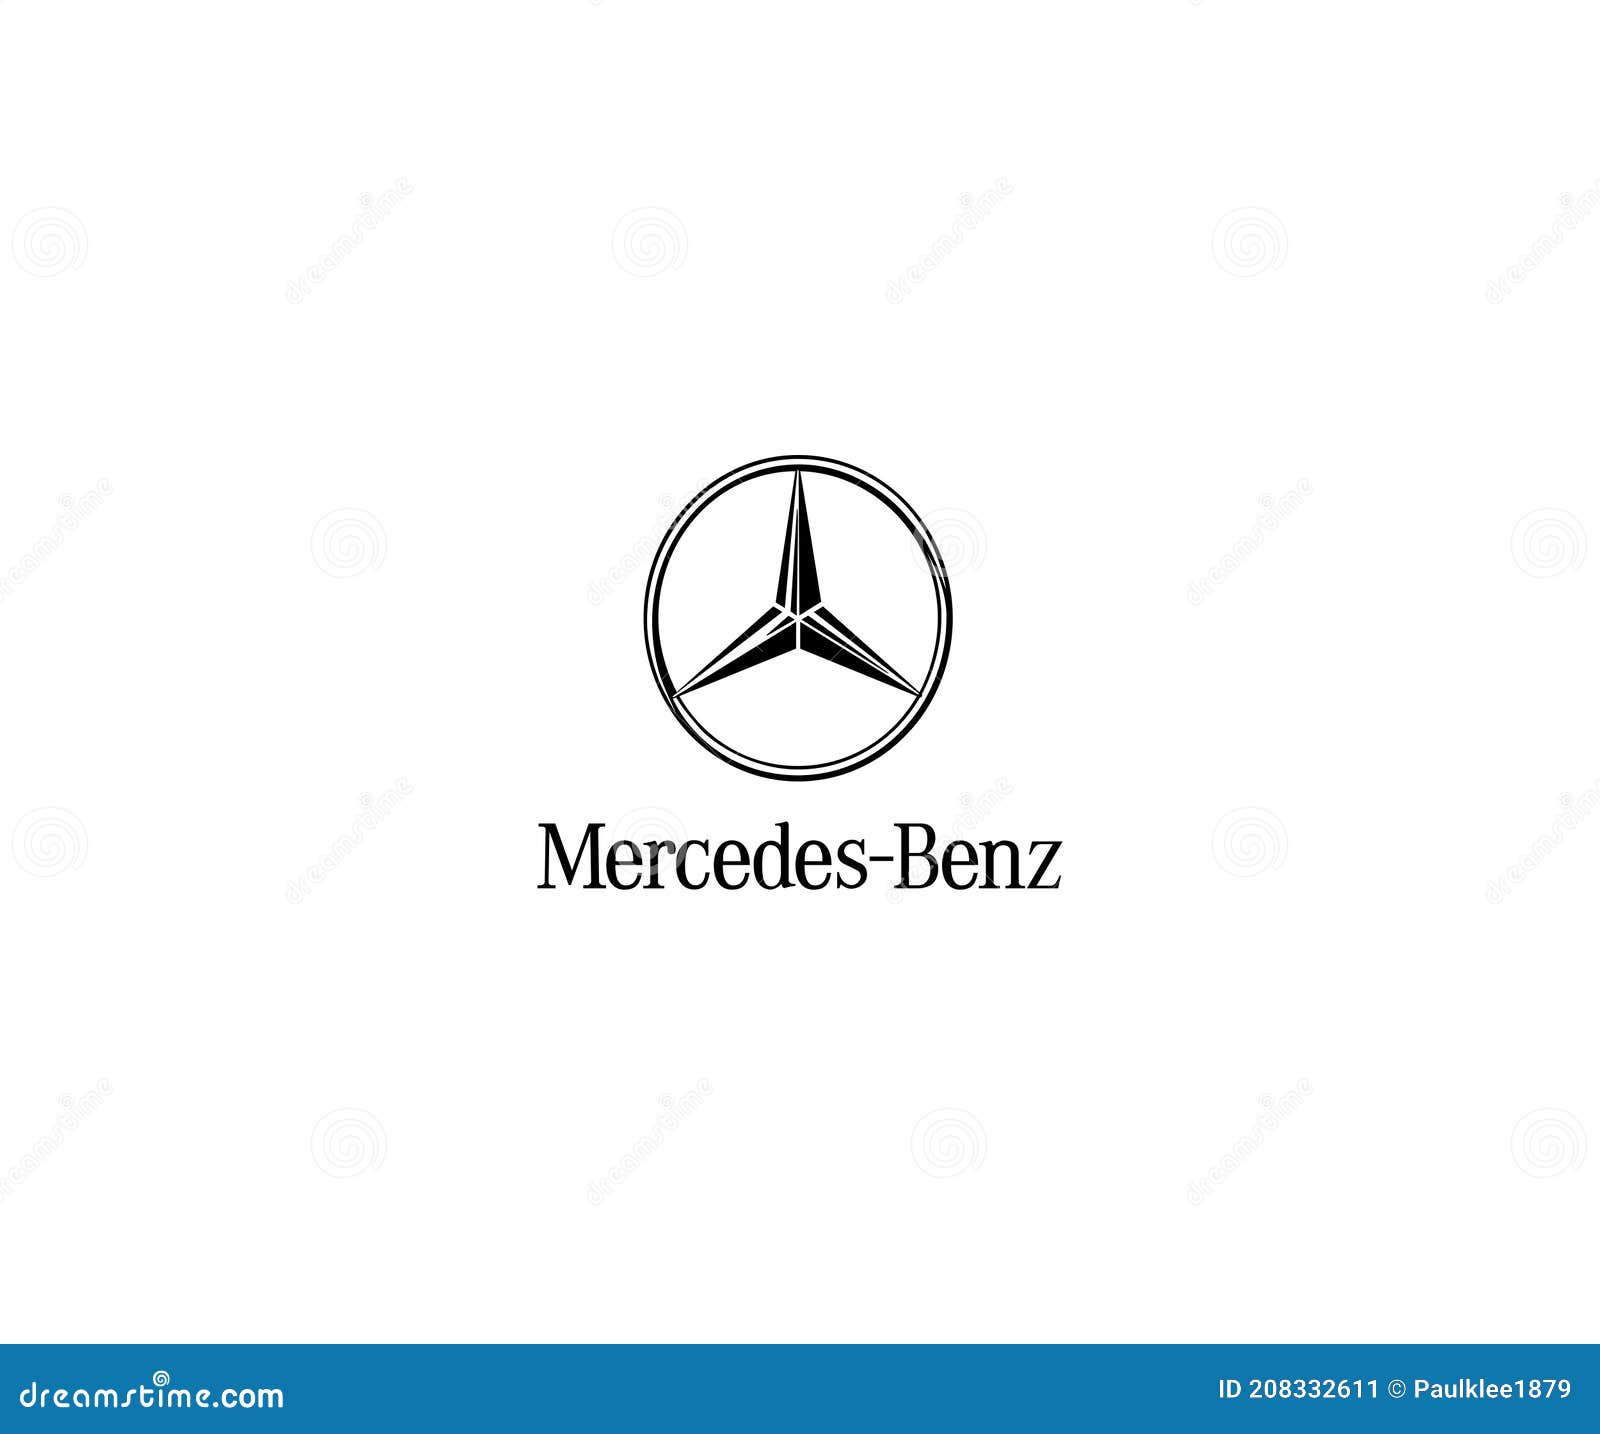 Mercedes Benz Logo HD Wallpaper  WallpaperFX